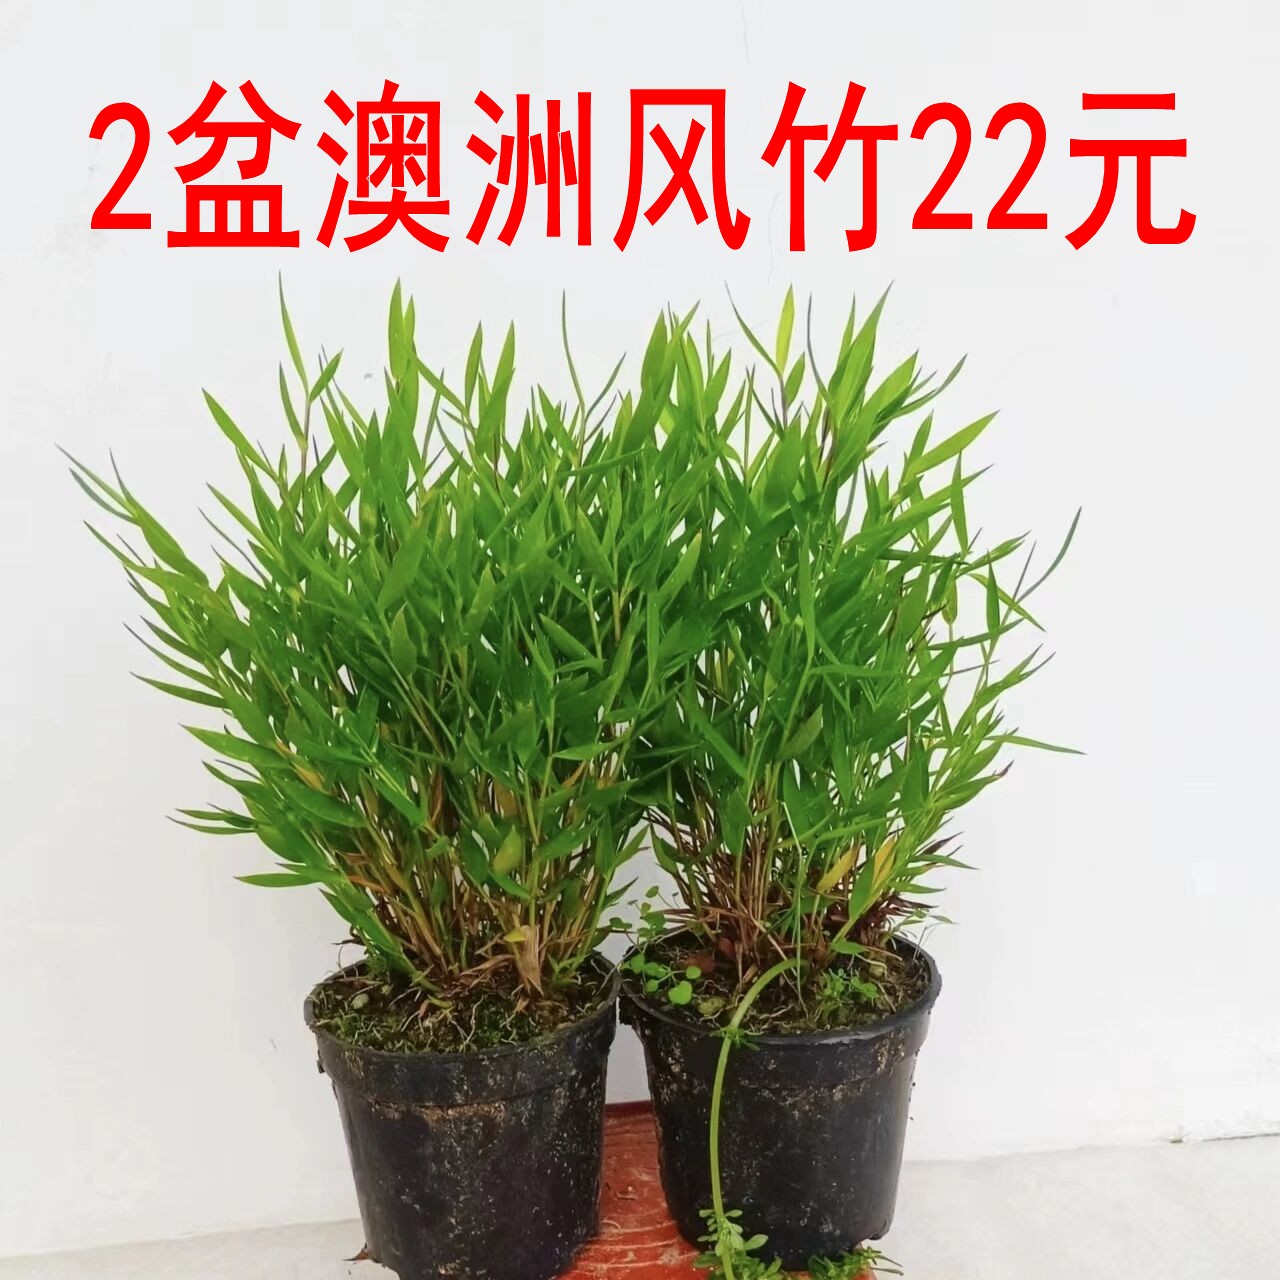 【2盆澳洲风竹22元】小竹子盆景盆栽禅意茶室绿植水陆缸素材